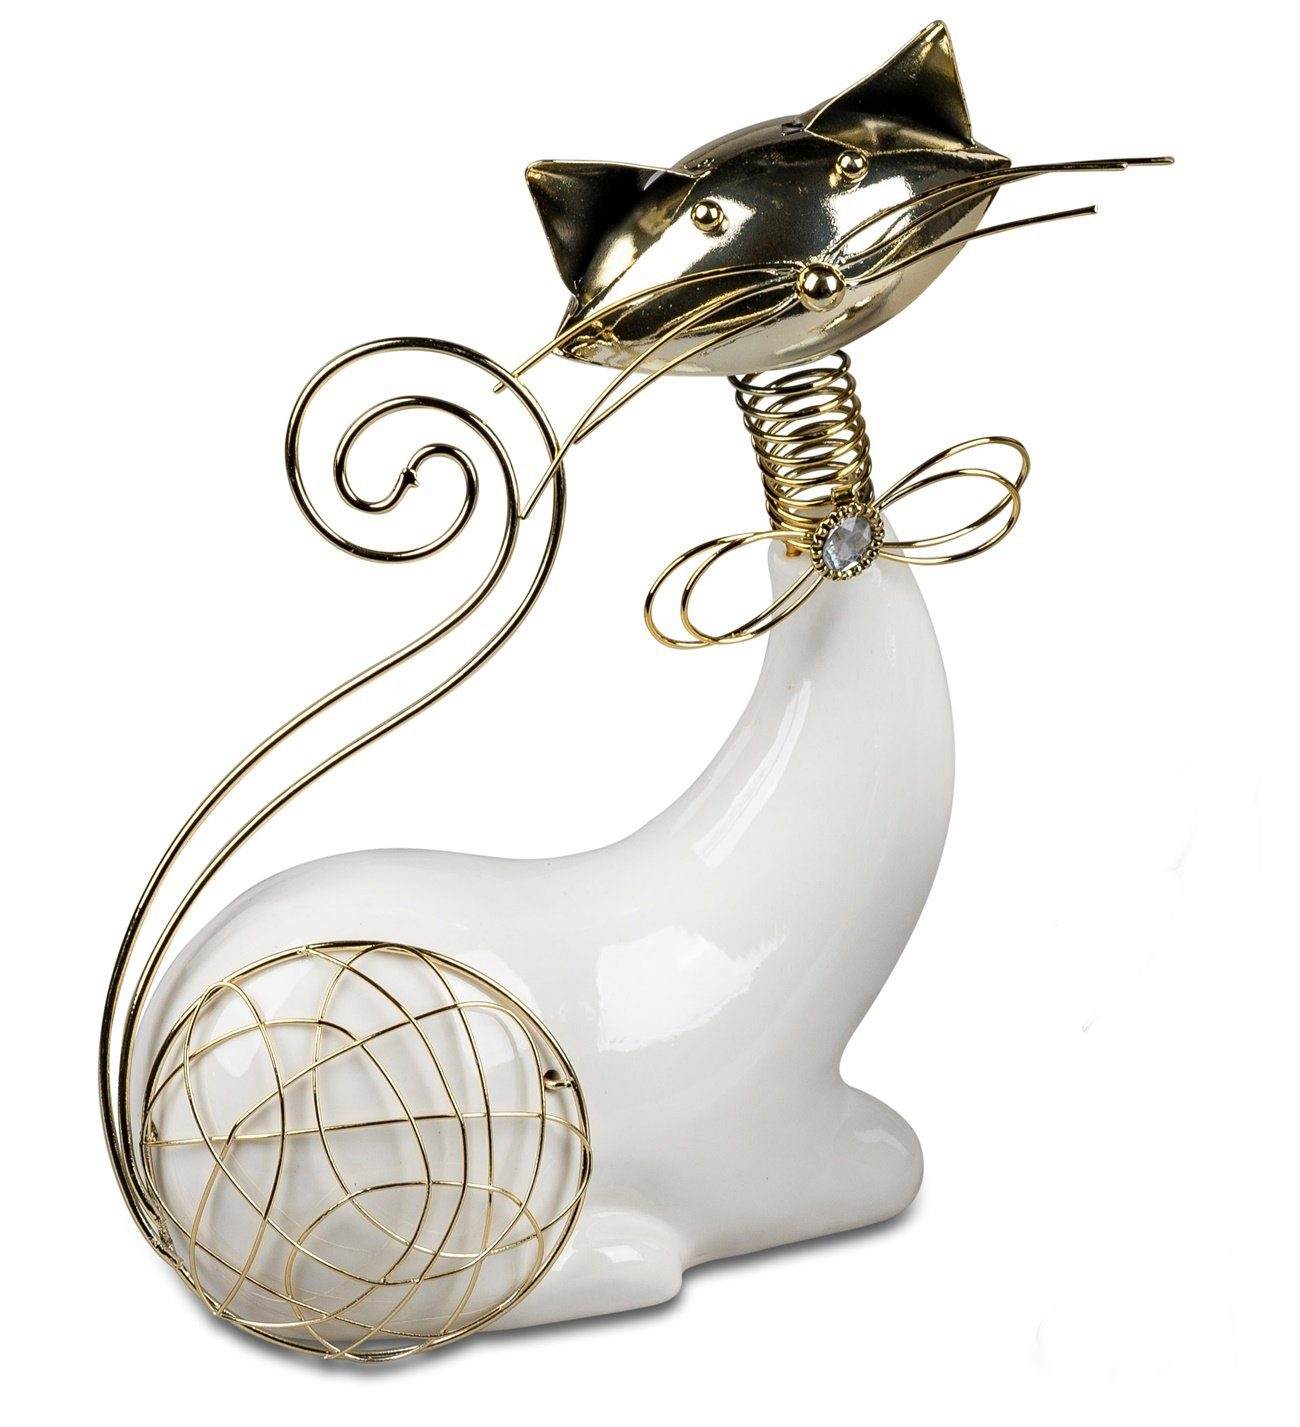 dekojohnson Dekofigur Deko-Katze aus Porzellan und Metall weiß-gold 24cm